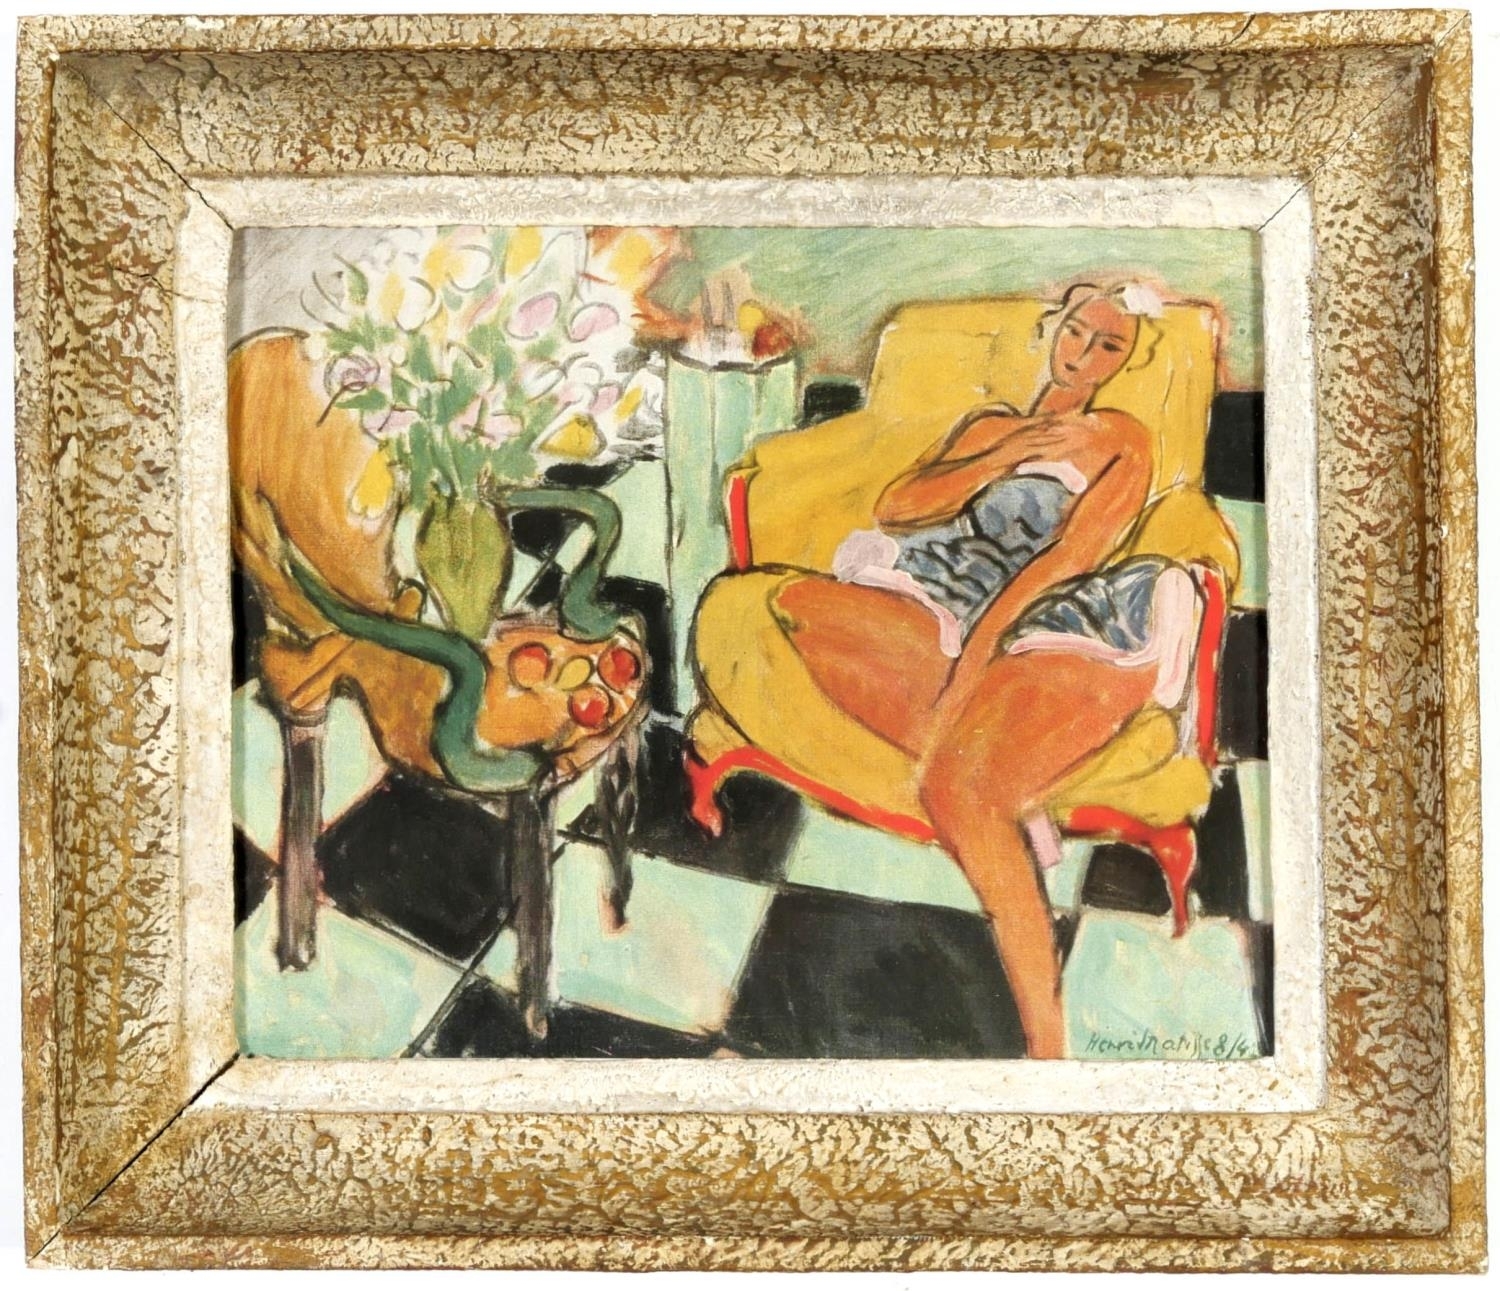 Femme assise sur une chaise janue by Henri Matisse